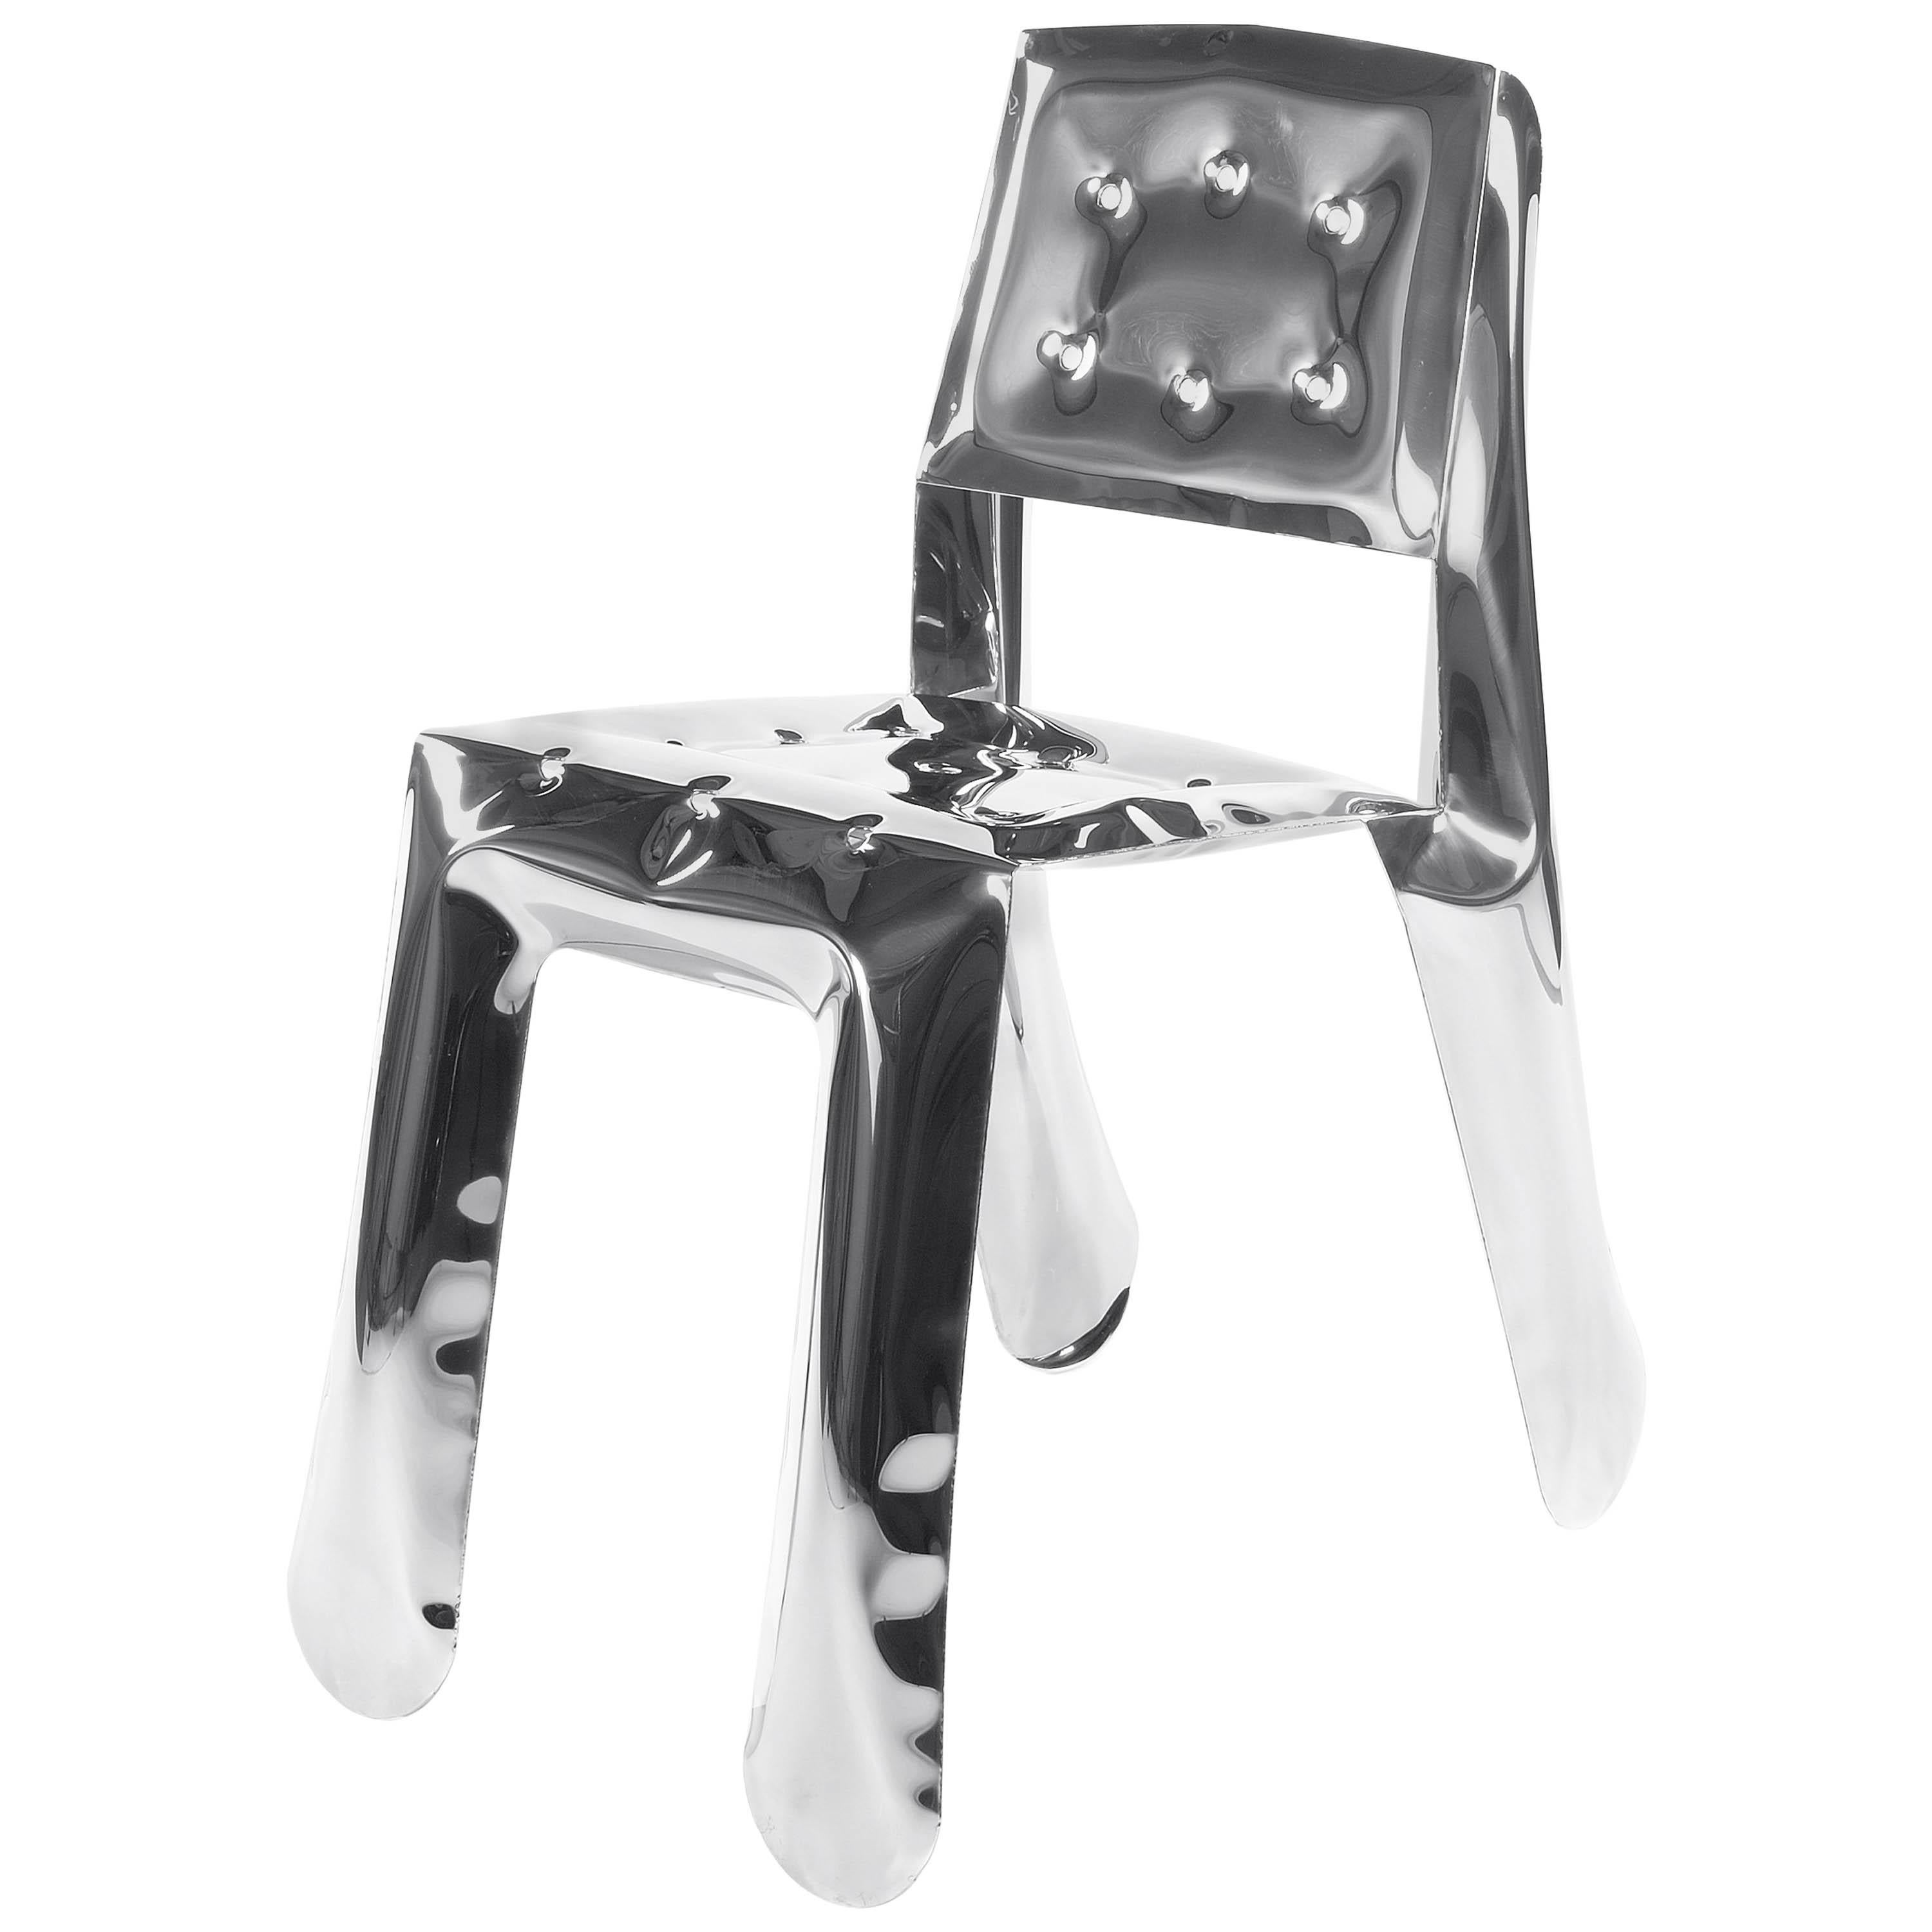 Chippensteel 0.5-Stuhl aus poliertem Edelstahl von Zieta, limitierte Auflage